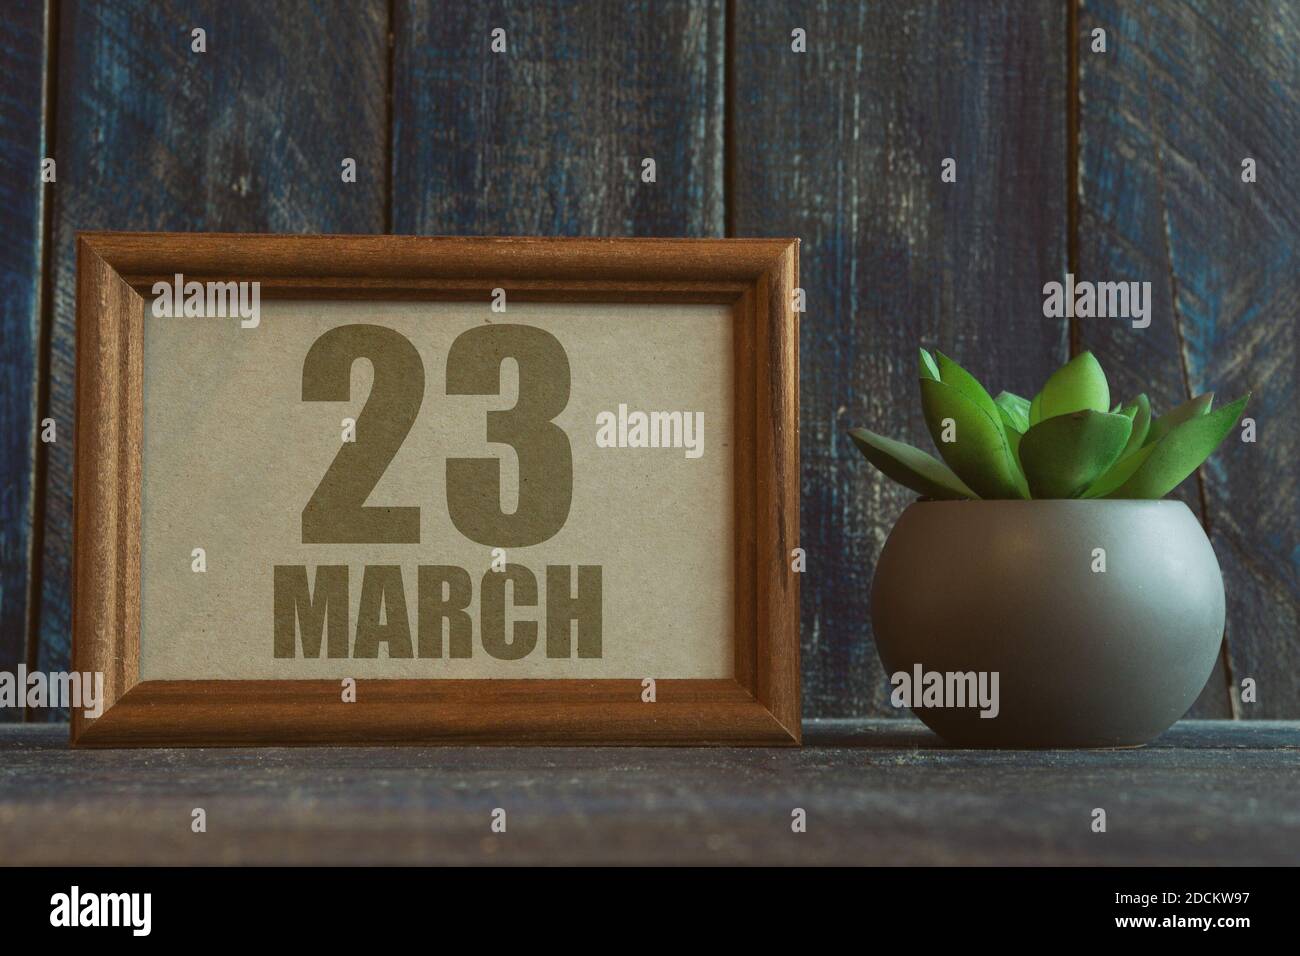 märz 23rd. Tag 23 des Monats, Datum im Rahmen neben Sukkulente auf hölzernen Hintergrund Frühlingsmonat, Tag des Jahres Konzept Stockfoto